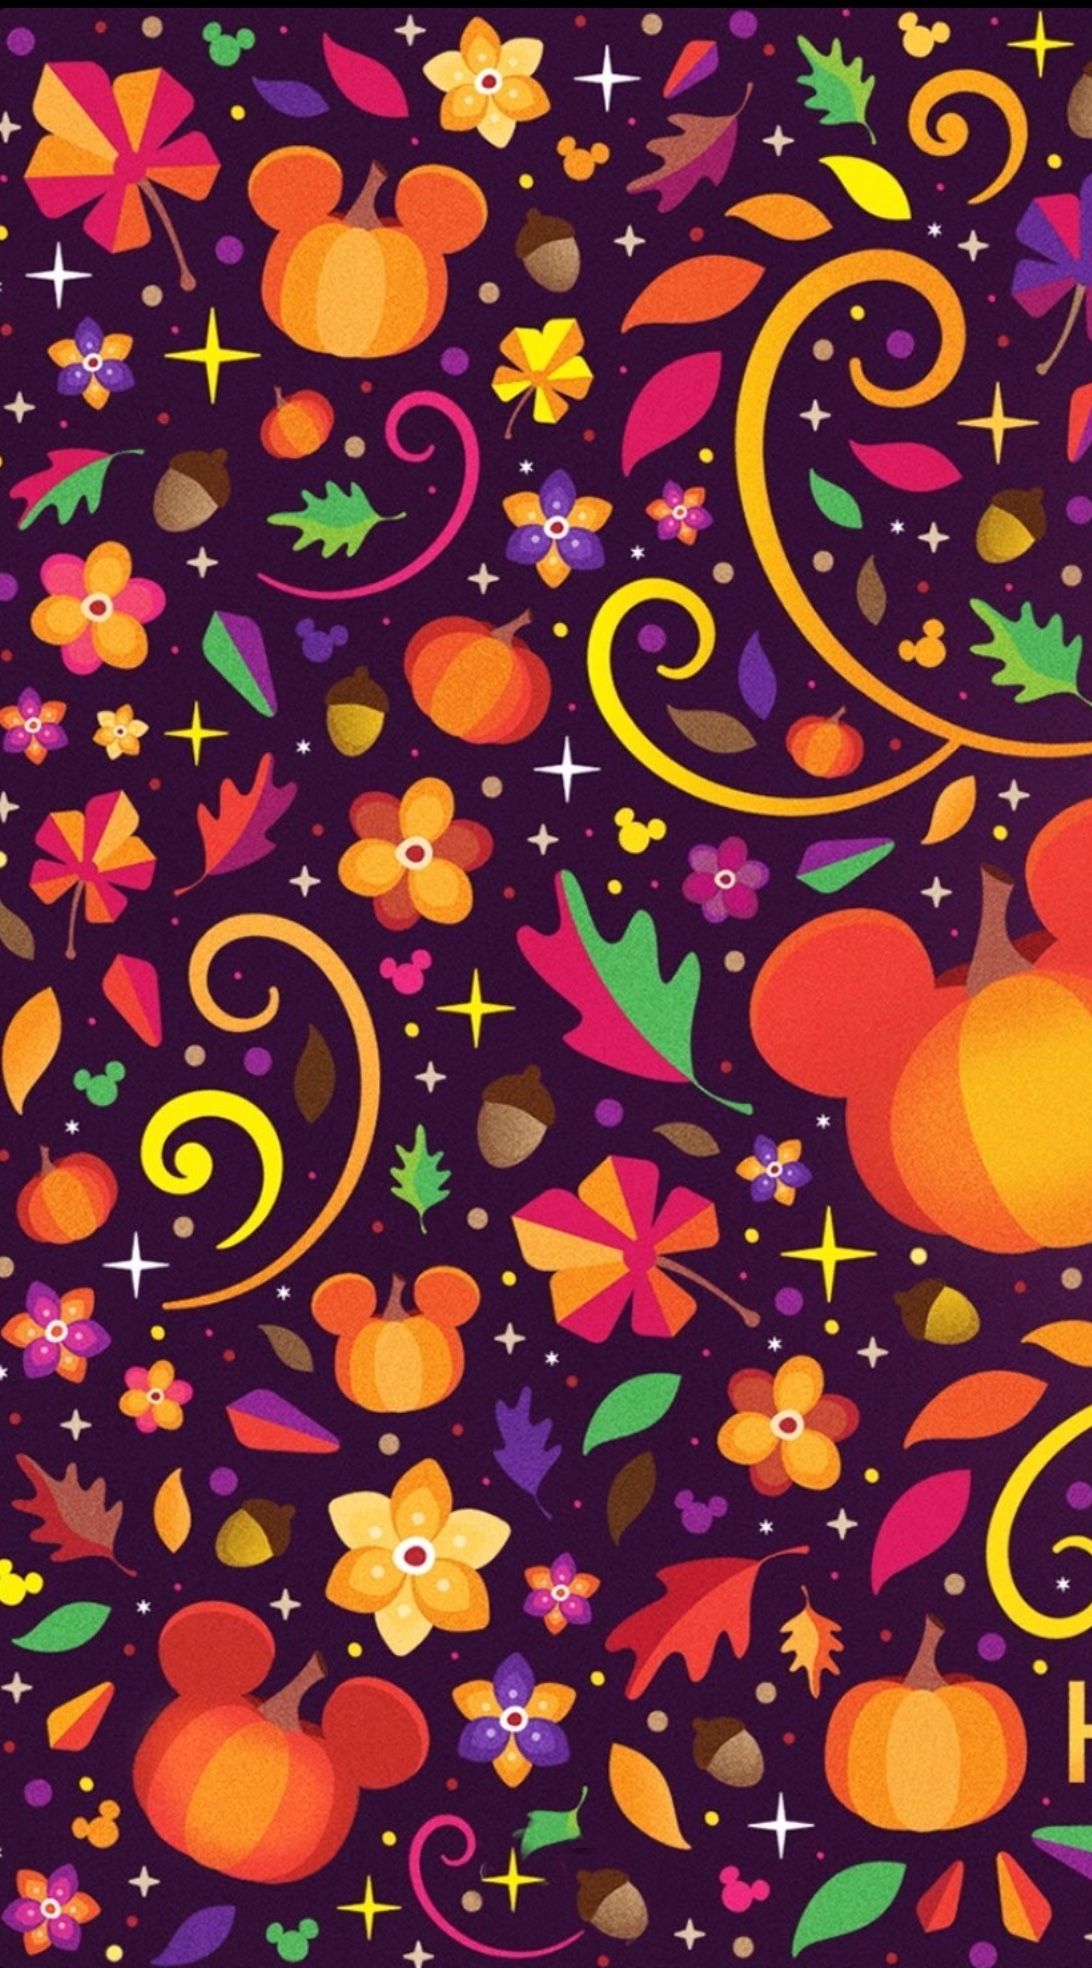 Disney Love. Halloween wallpaper iphone, Thanksgiving wallpaper, Disney phone wallpaper